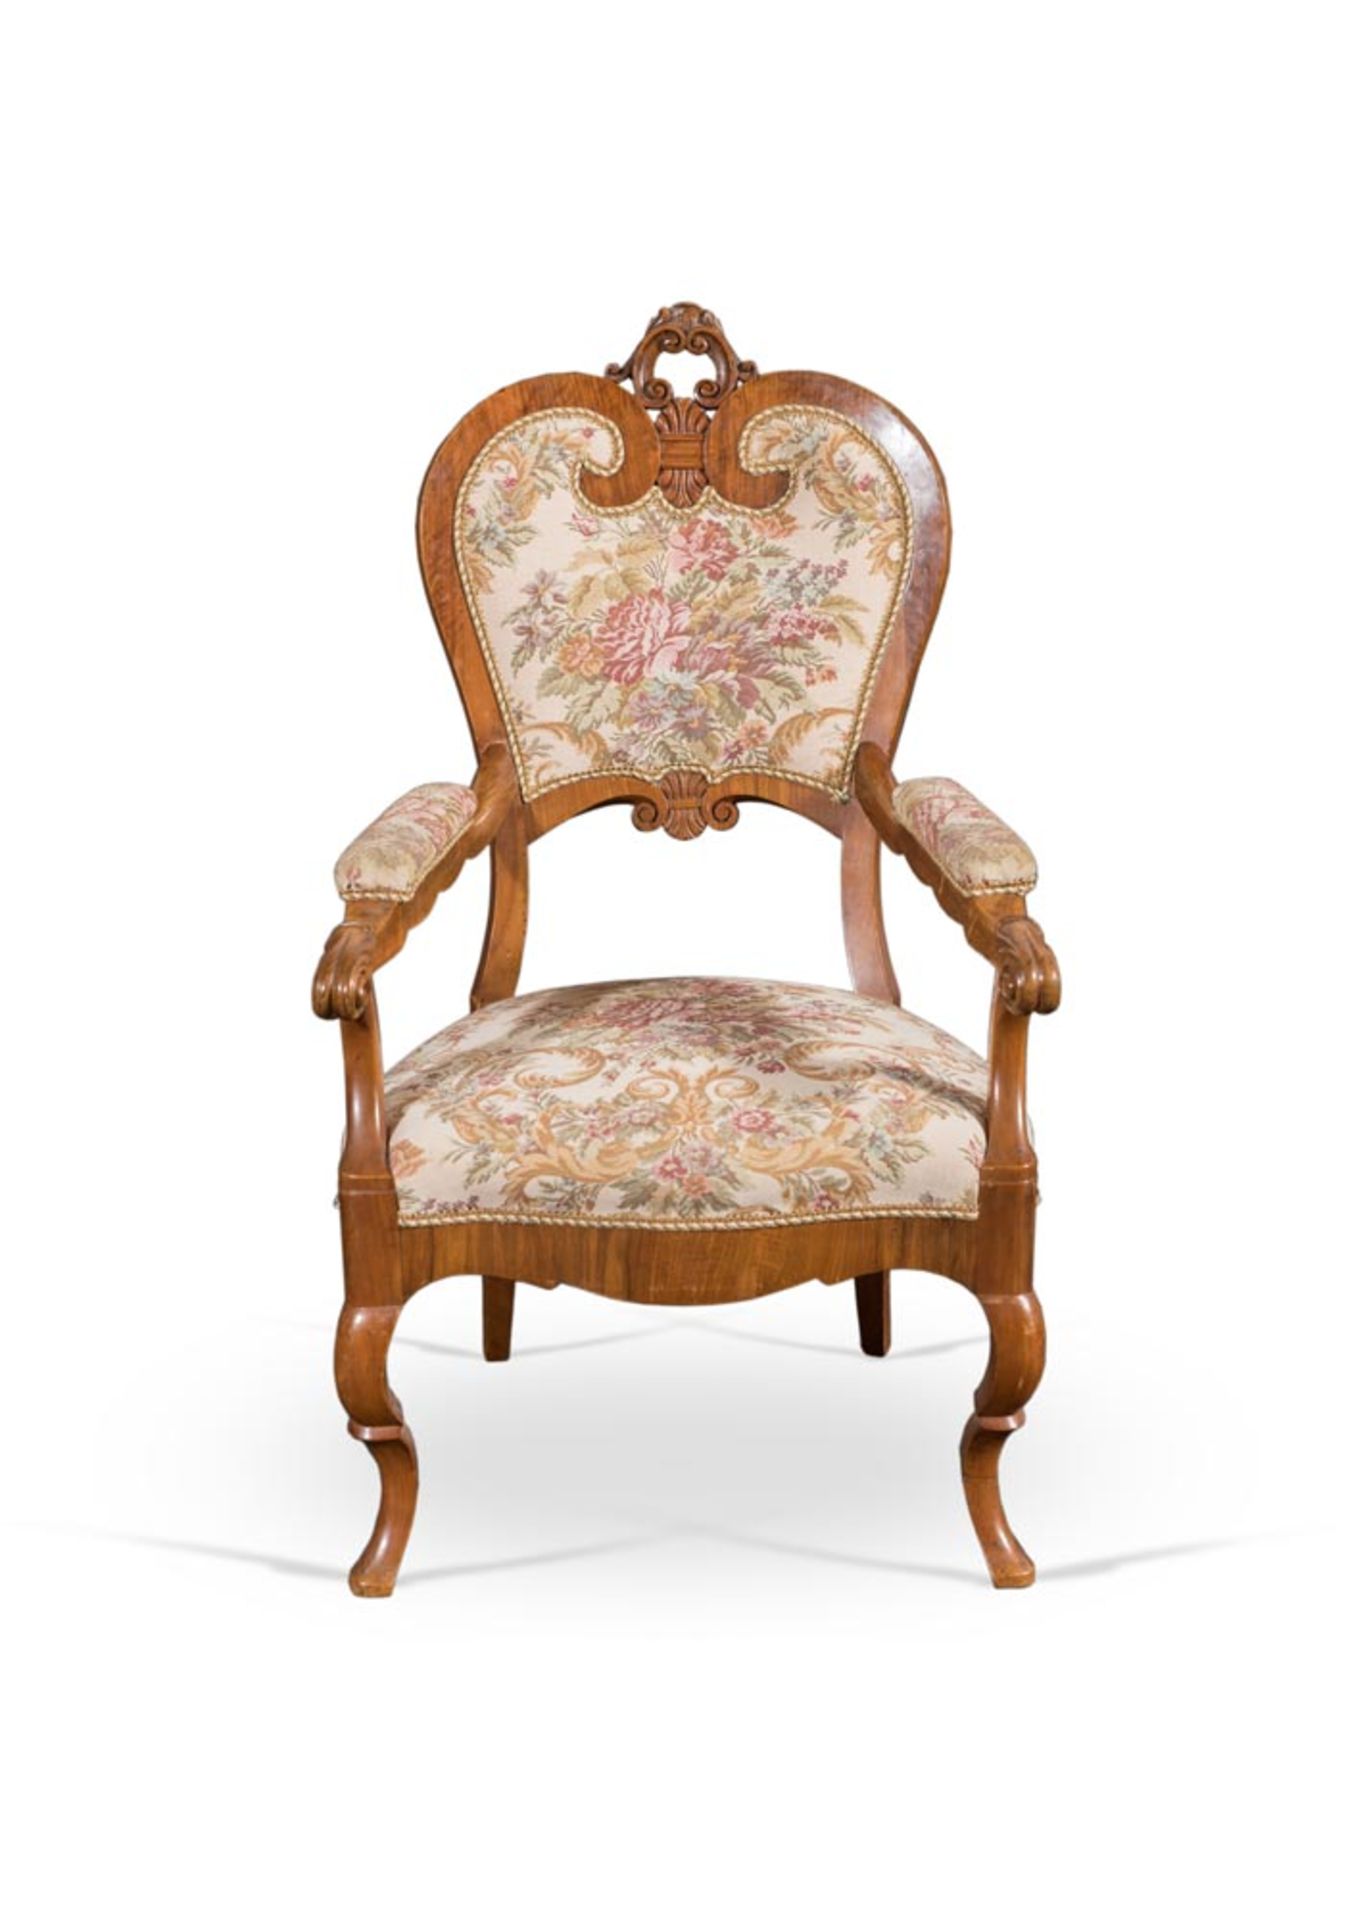 Luigi Filippo walnut armchair, Northern Italy, 19th Century.